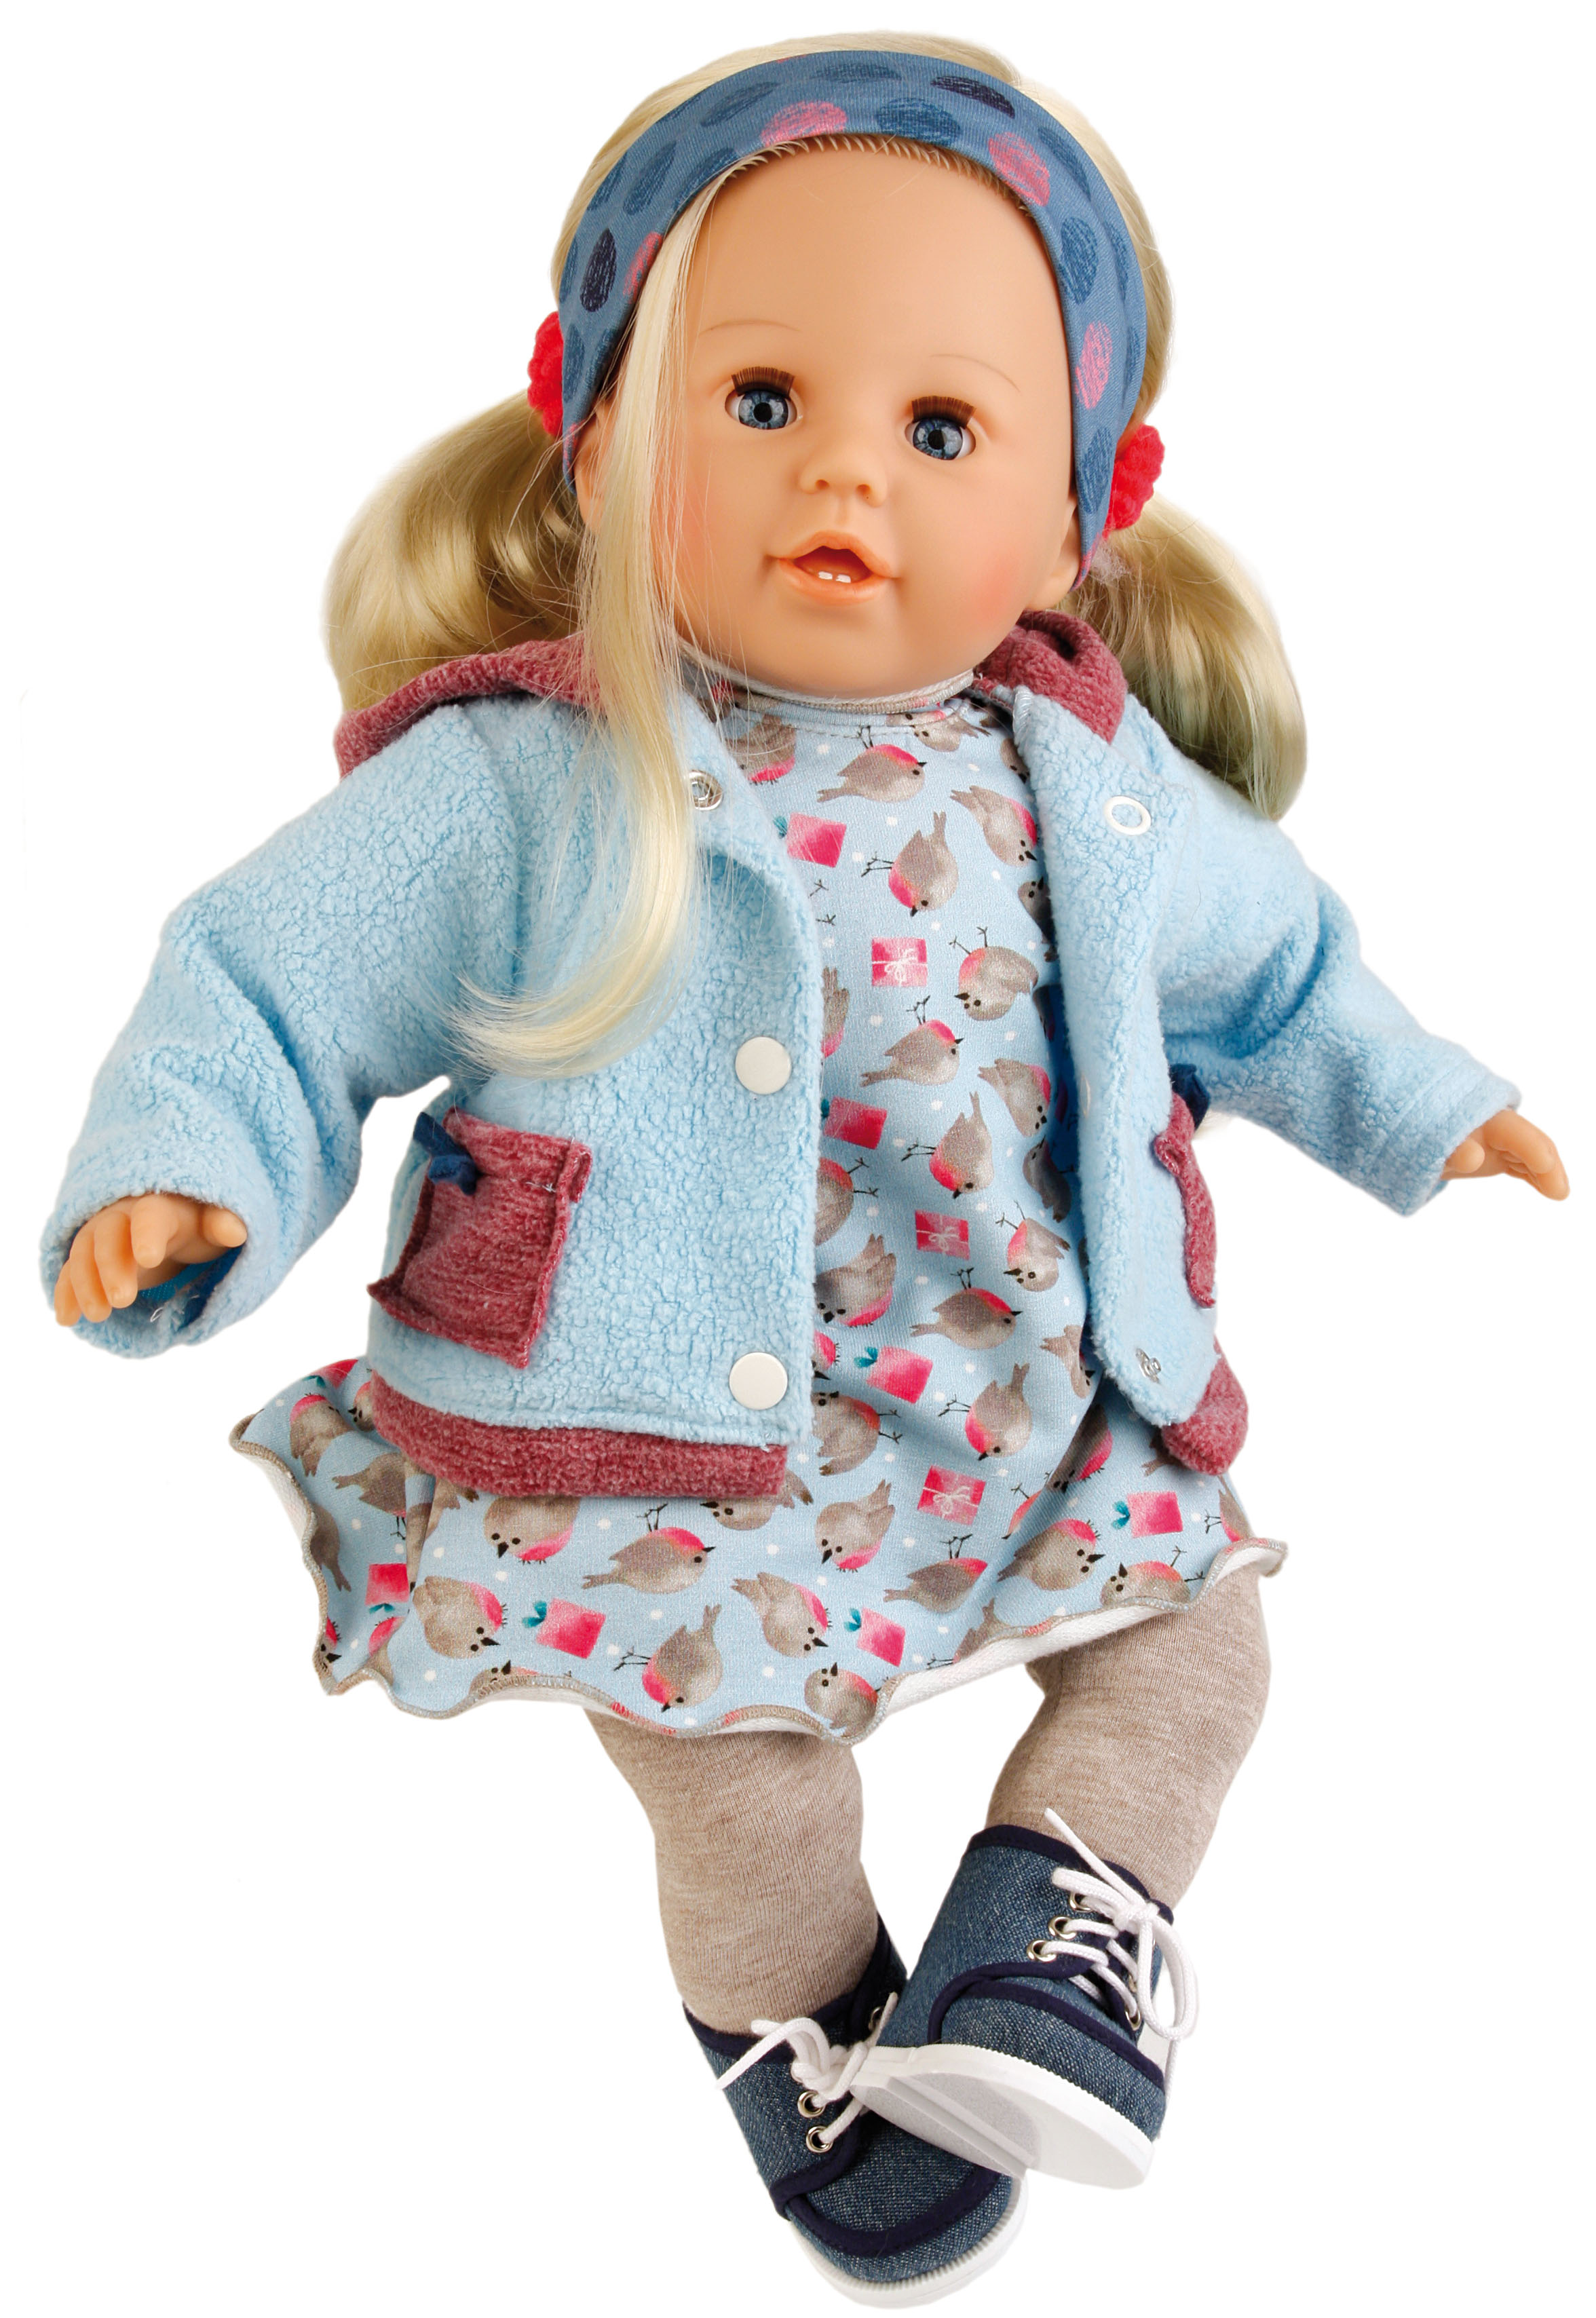 Puppe Susi 45 Cm Blonde Haare Blaue Schlafaugen Kleidung Winterlich In Blau Grau Spielpuppen Puppenwelt Schildkrot